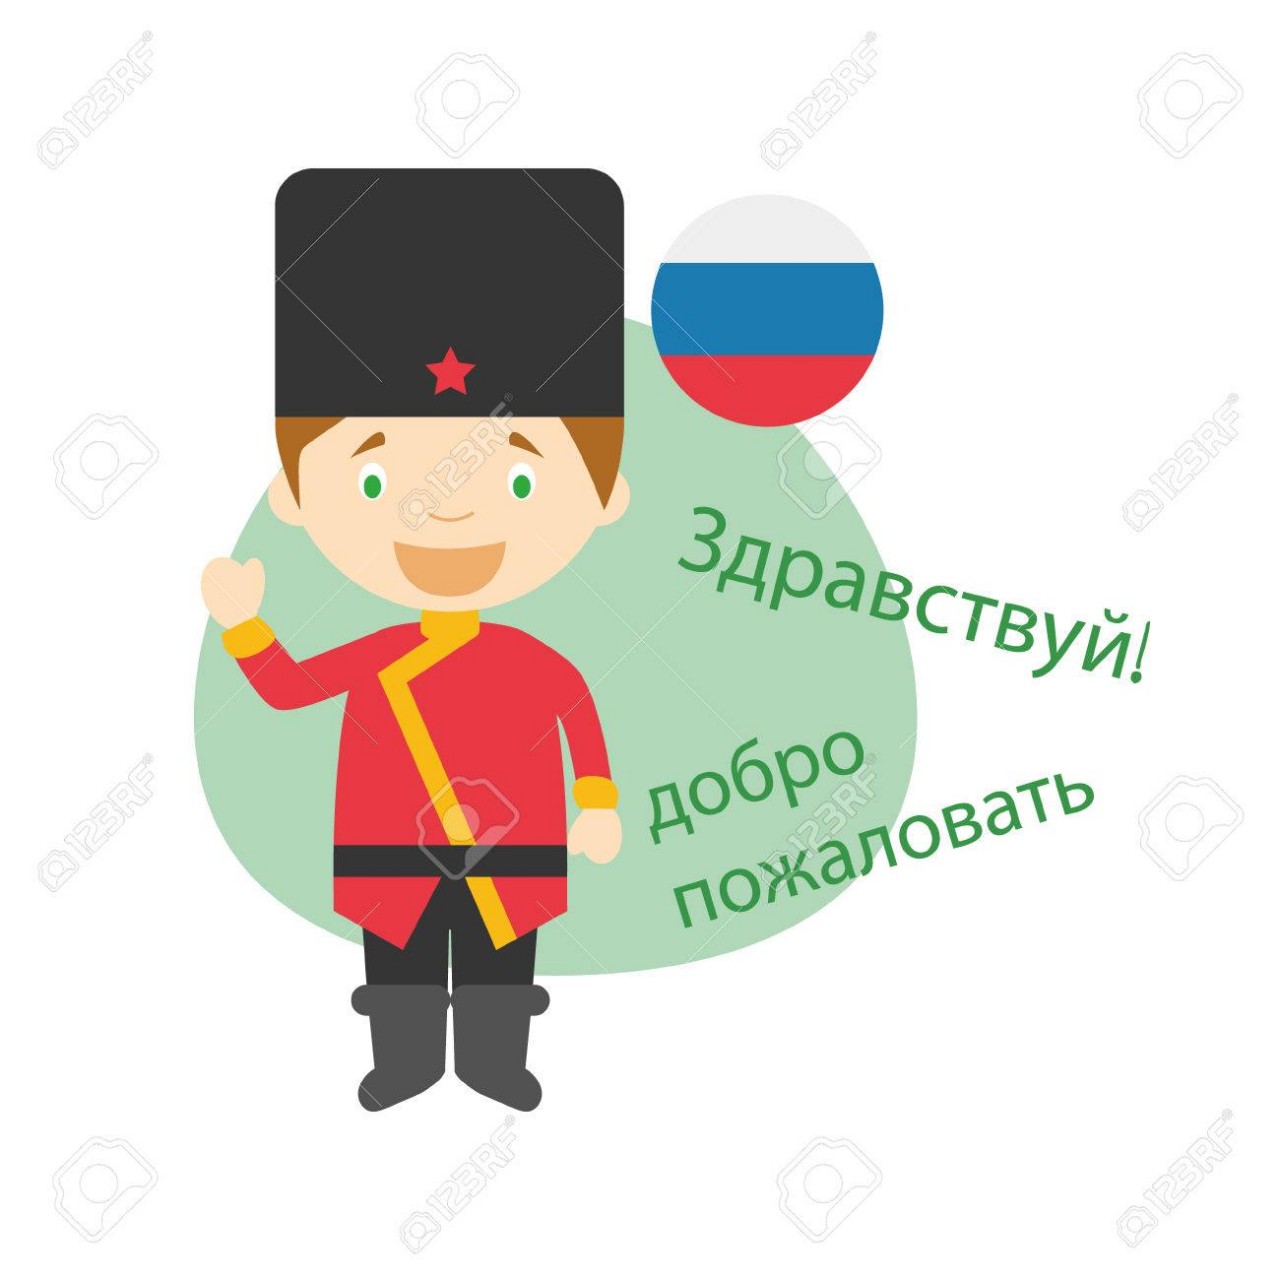 69554889-ベクトル挨拶漫画のキャラクターのイラストと、ロシア語で歓迎